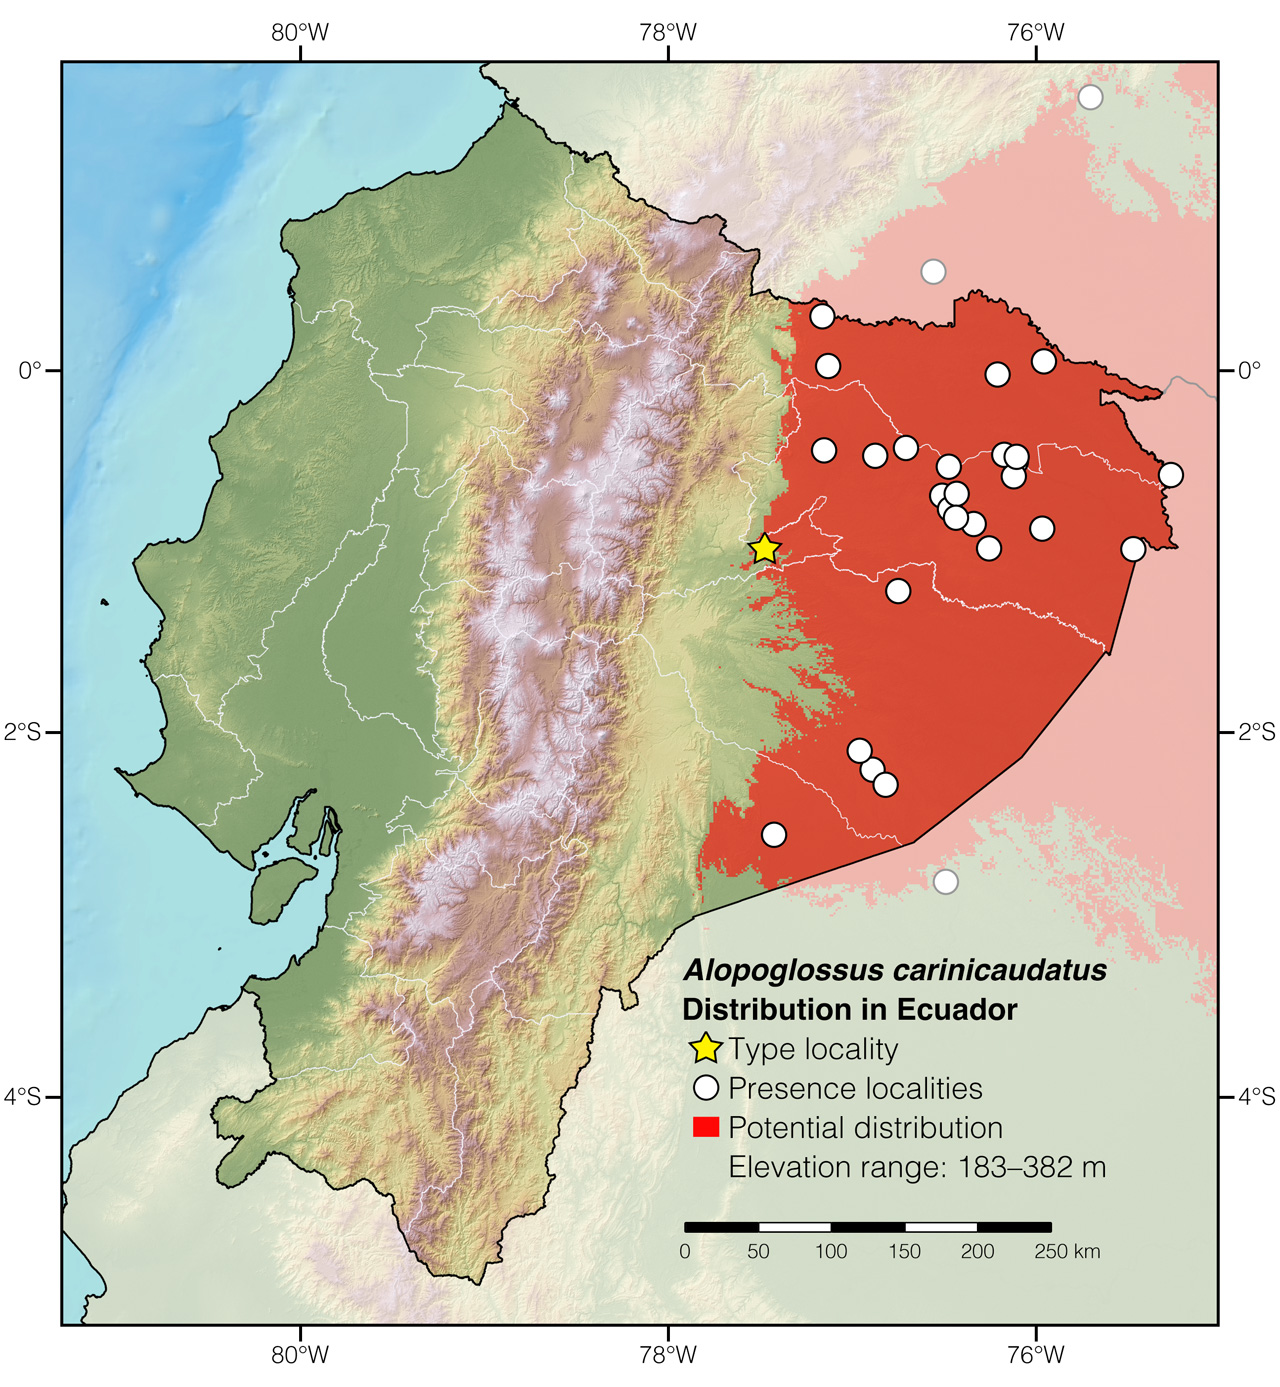 Distribution of Alopoglossus carinicaudatus in Ecuador